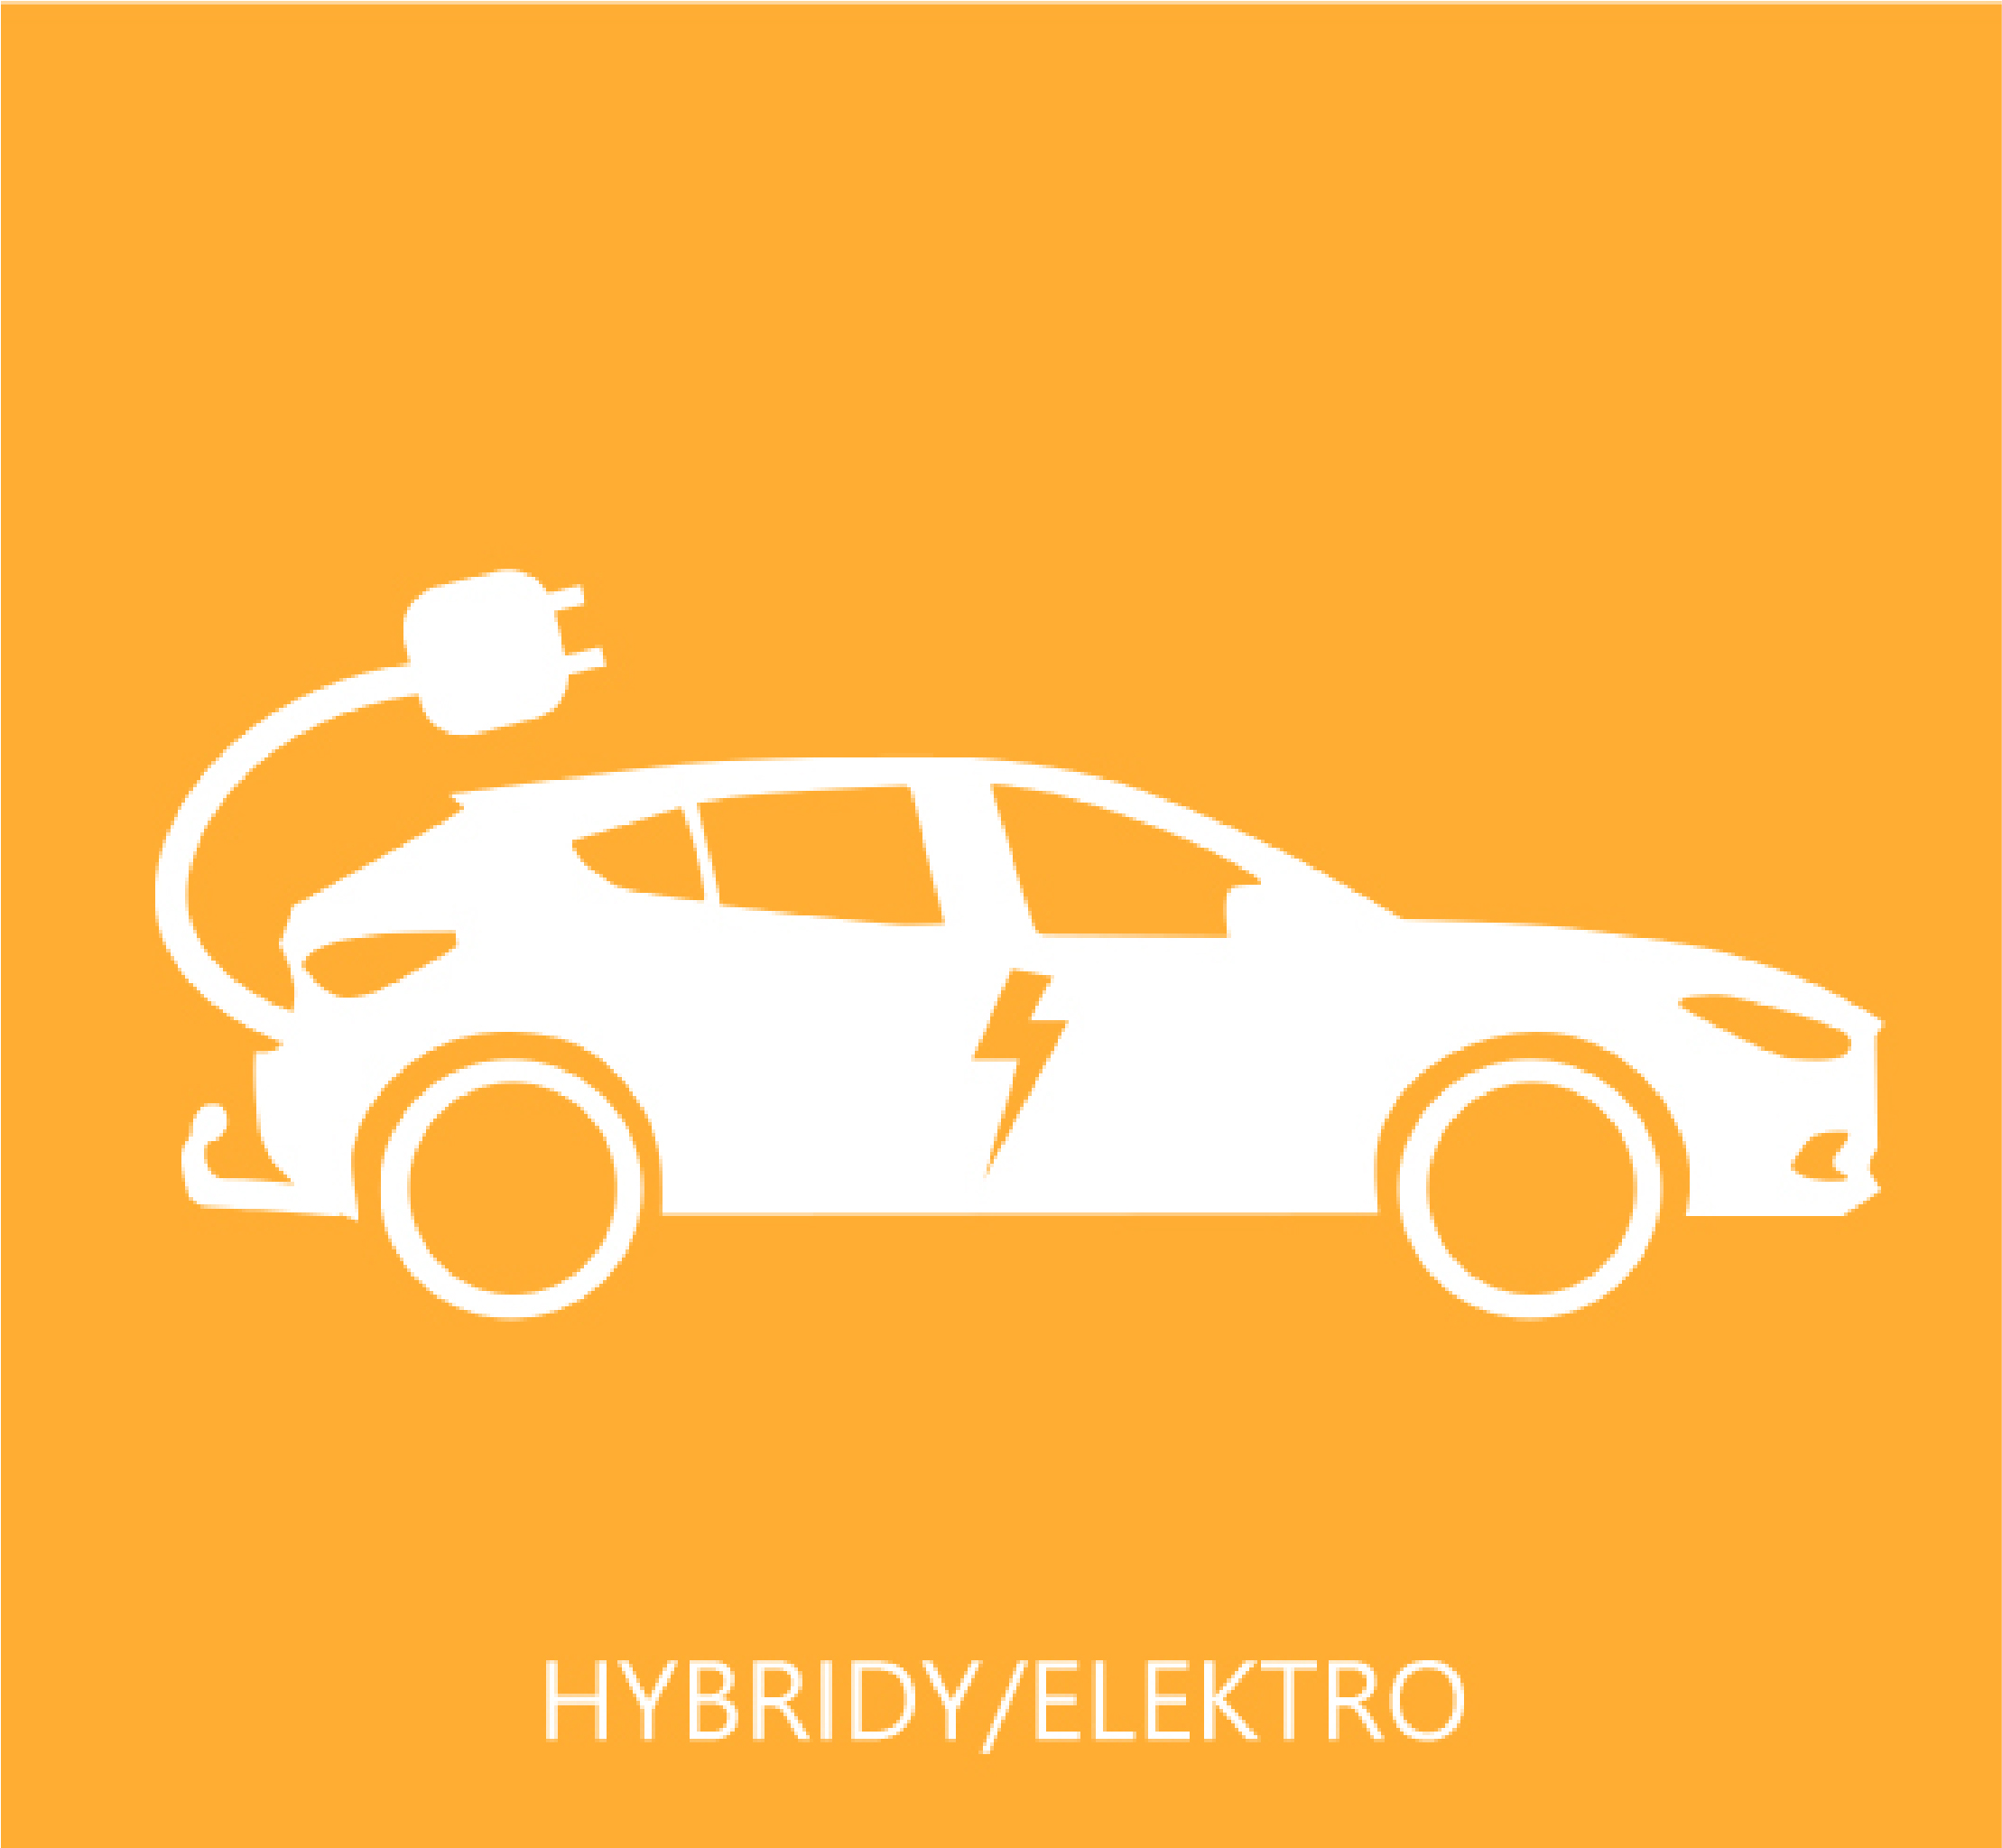 Hybridy/elektro